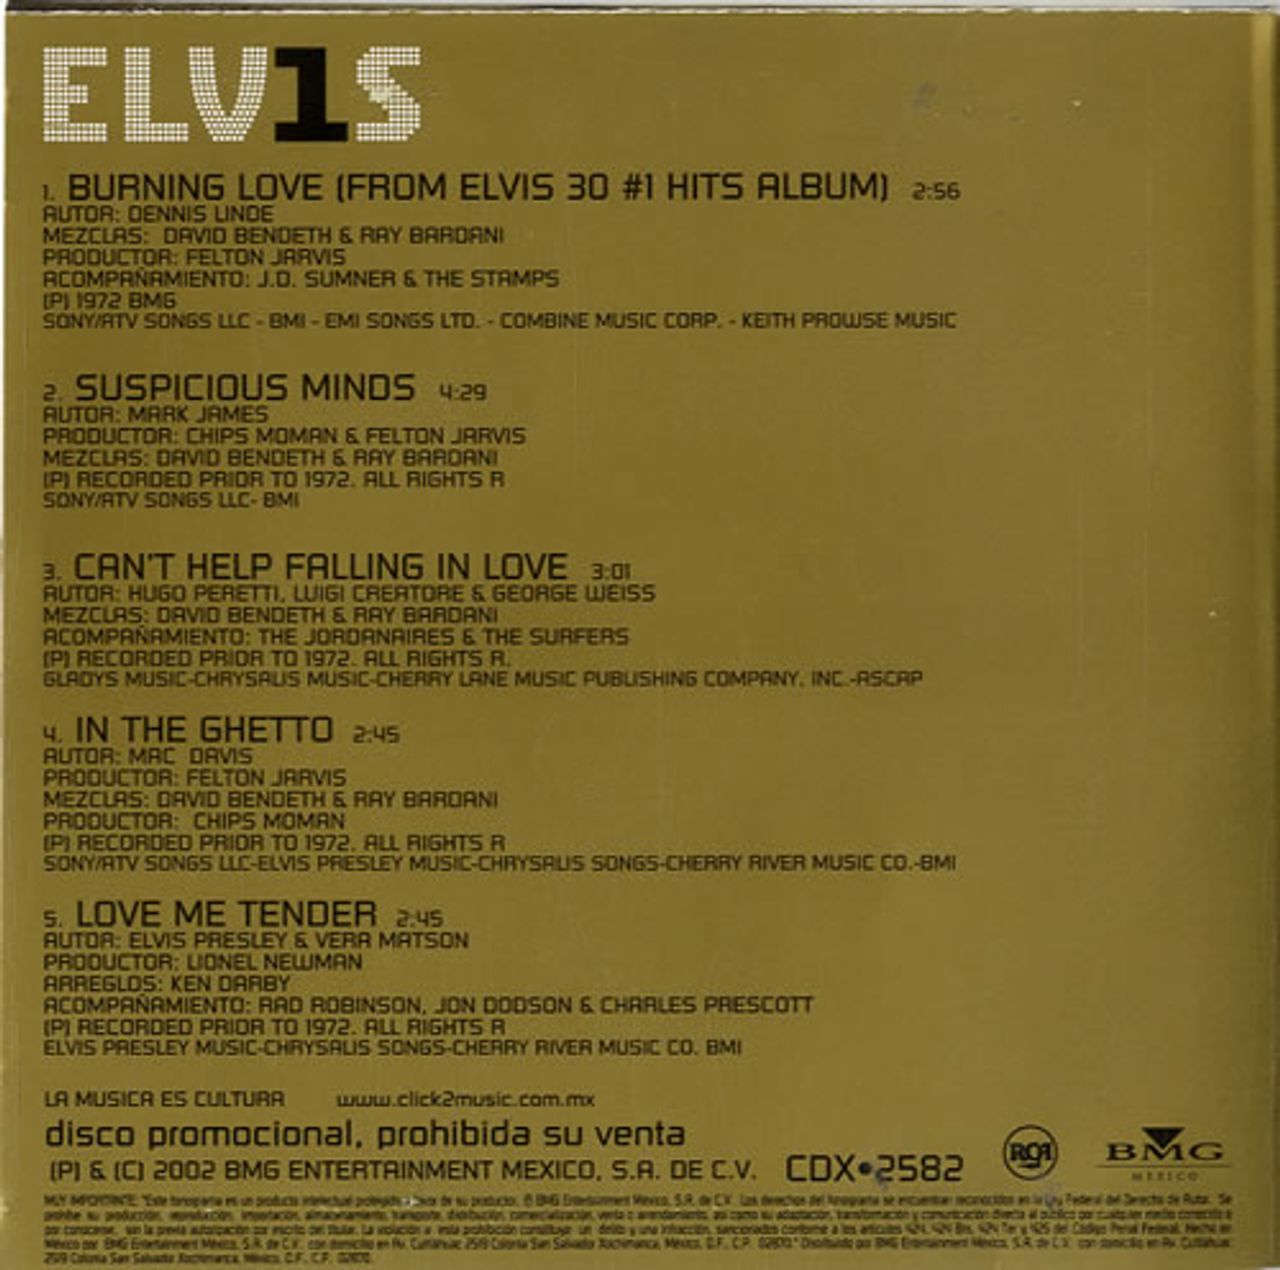 Elvis Presley / 30 #1 HITS-